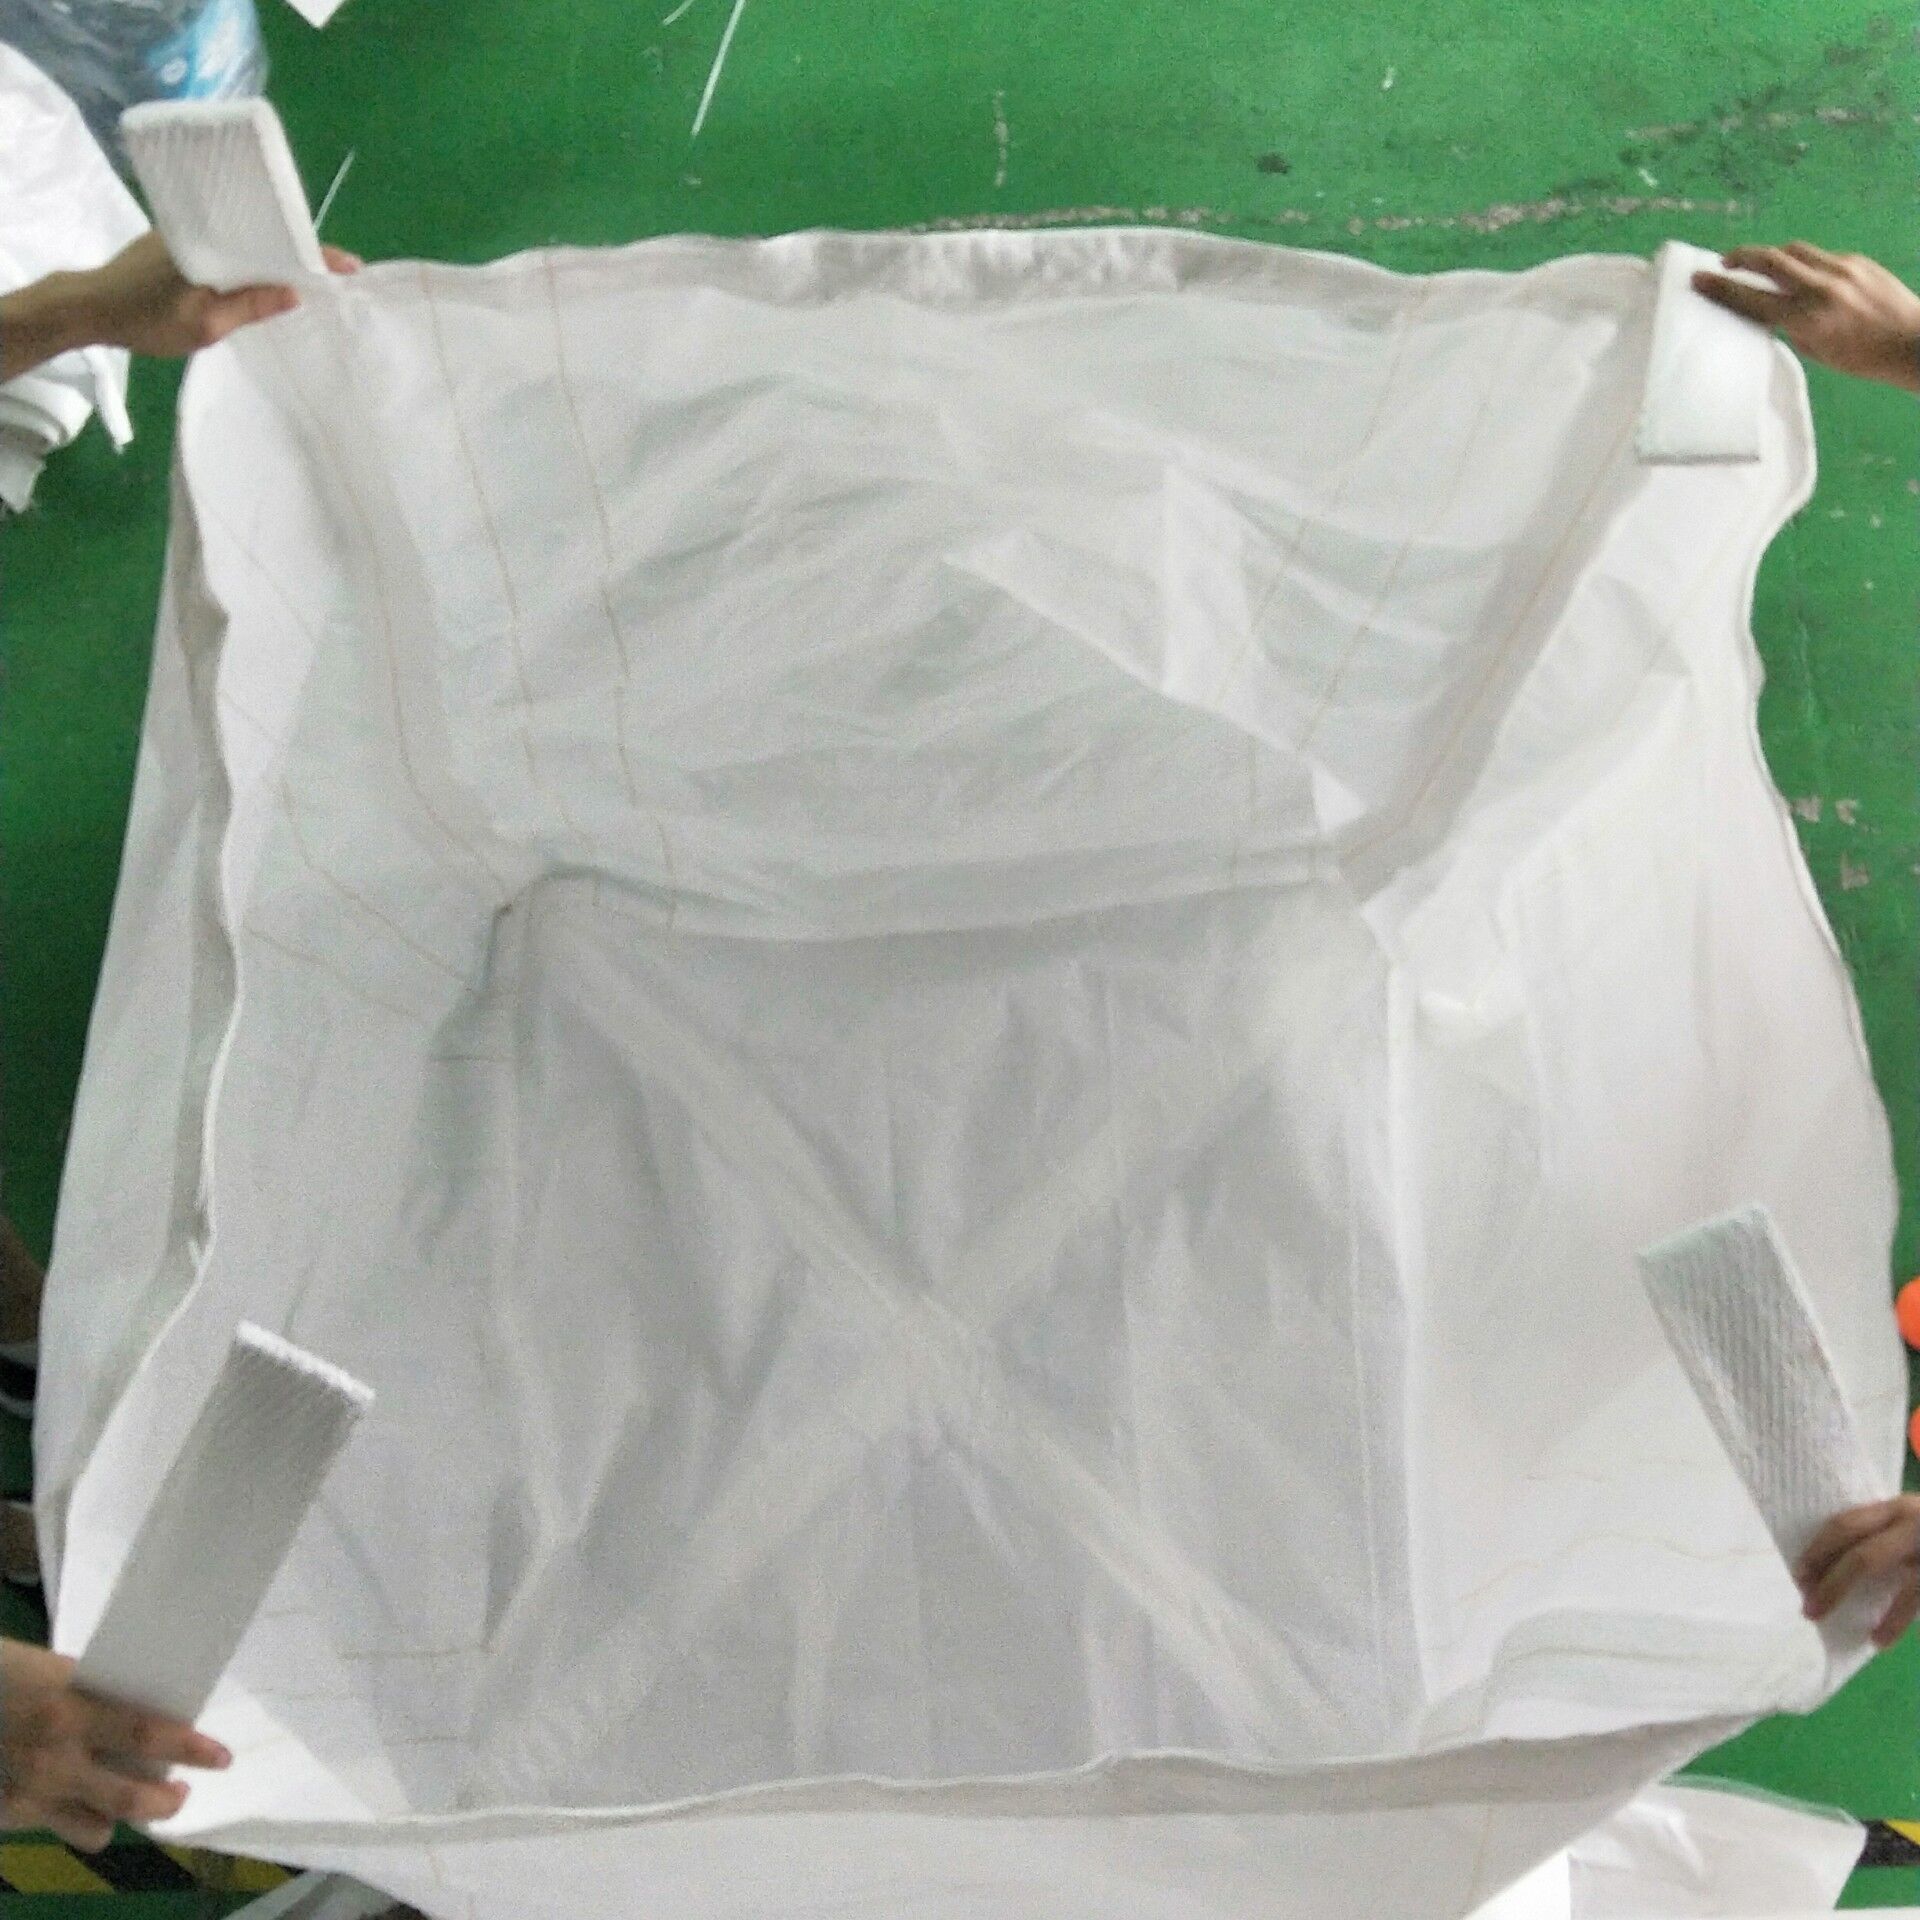 深圳高强度绿化编织袋订做批发厂家深圳高强度绿化编织袋订做批发--高品质直销